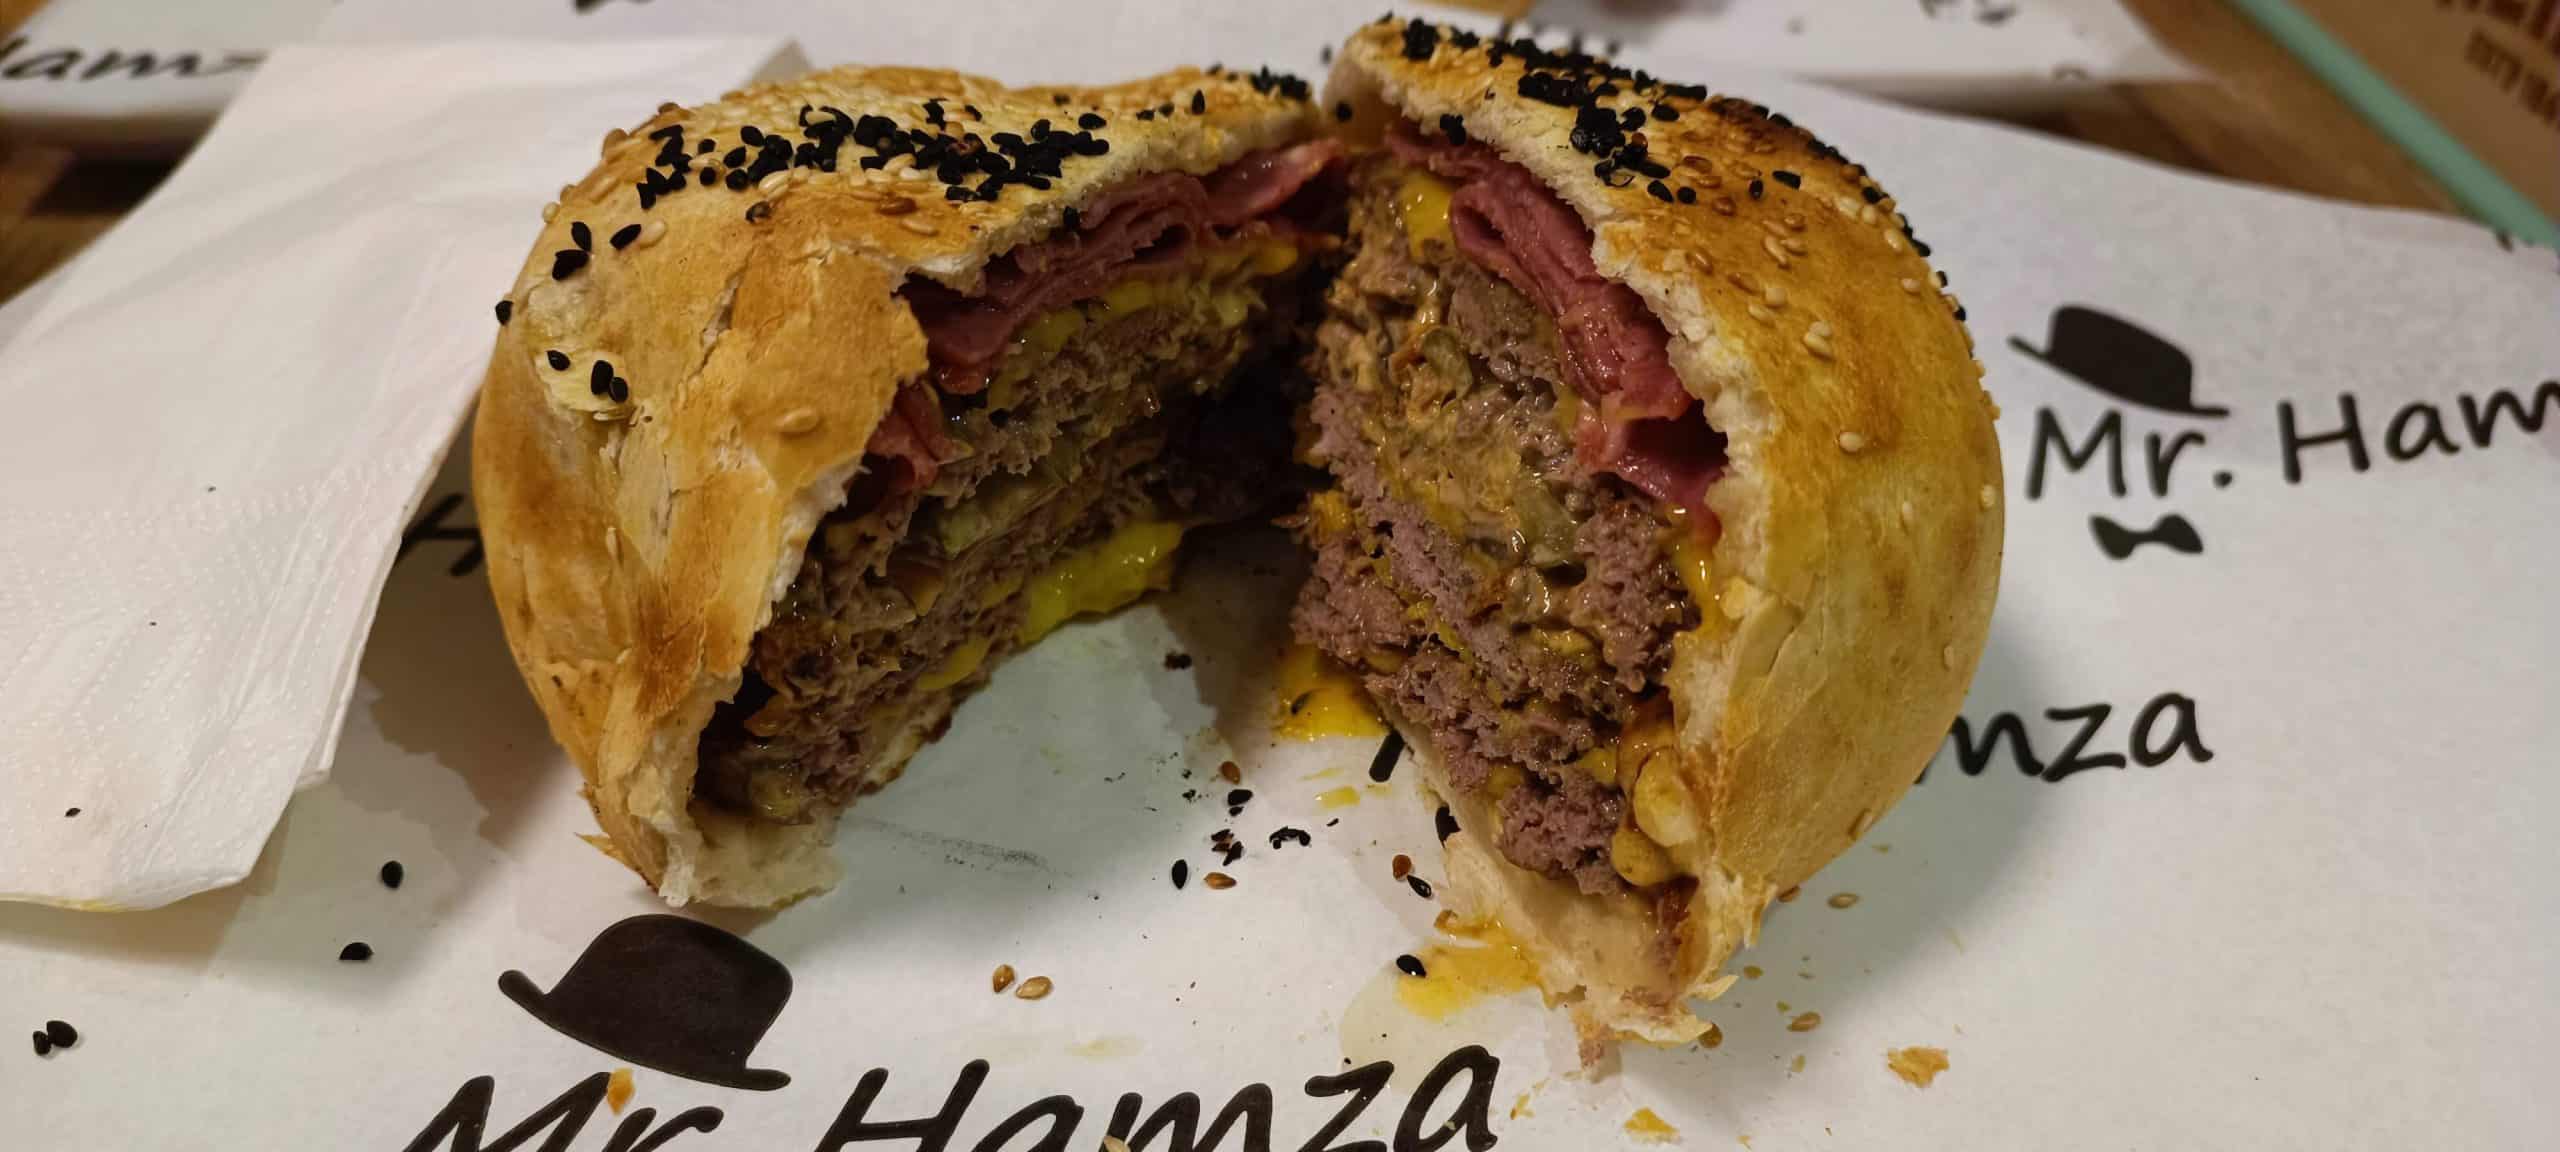 İstanbul’un en iyi hamburgercileri